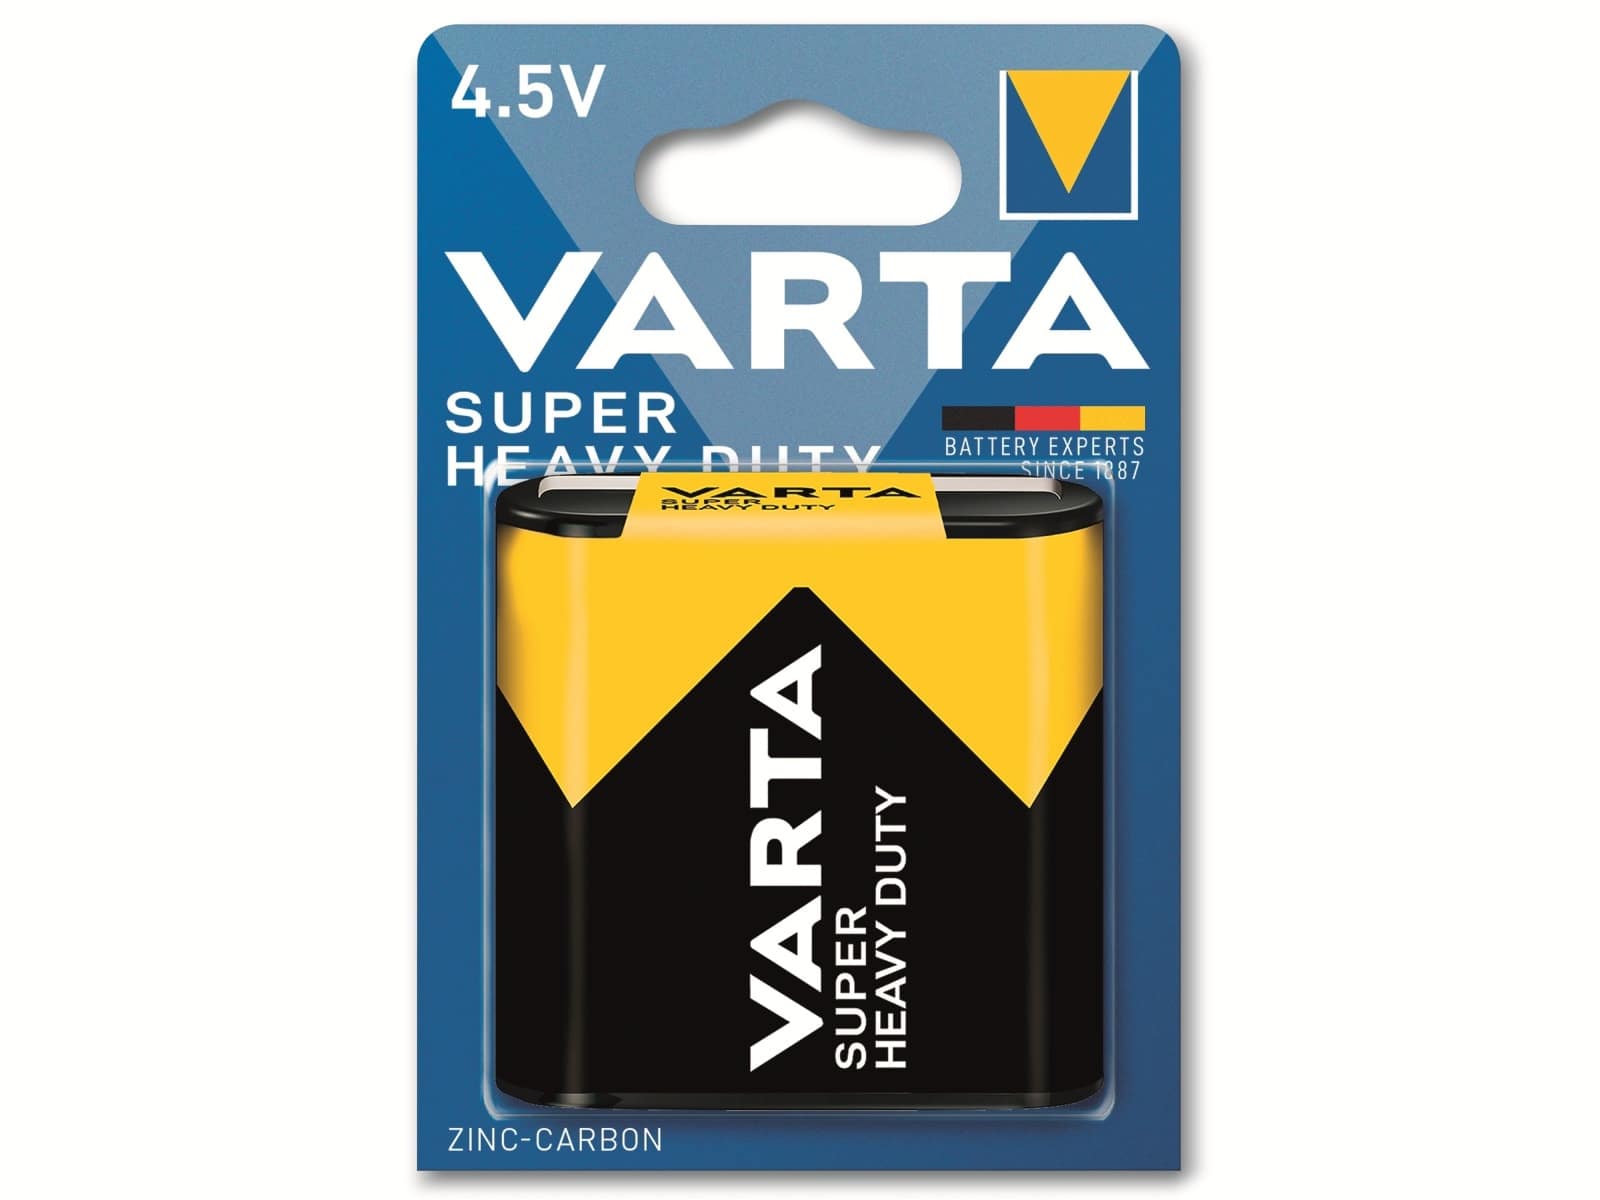 VARTA Batterie Zink-Kohle, 3R12, 4.5V, Superlife, 1 Stück